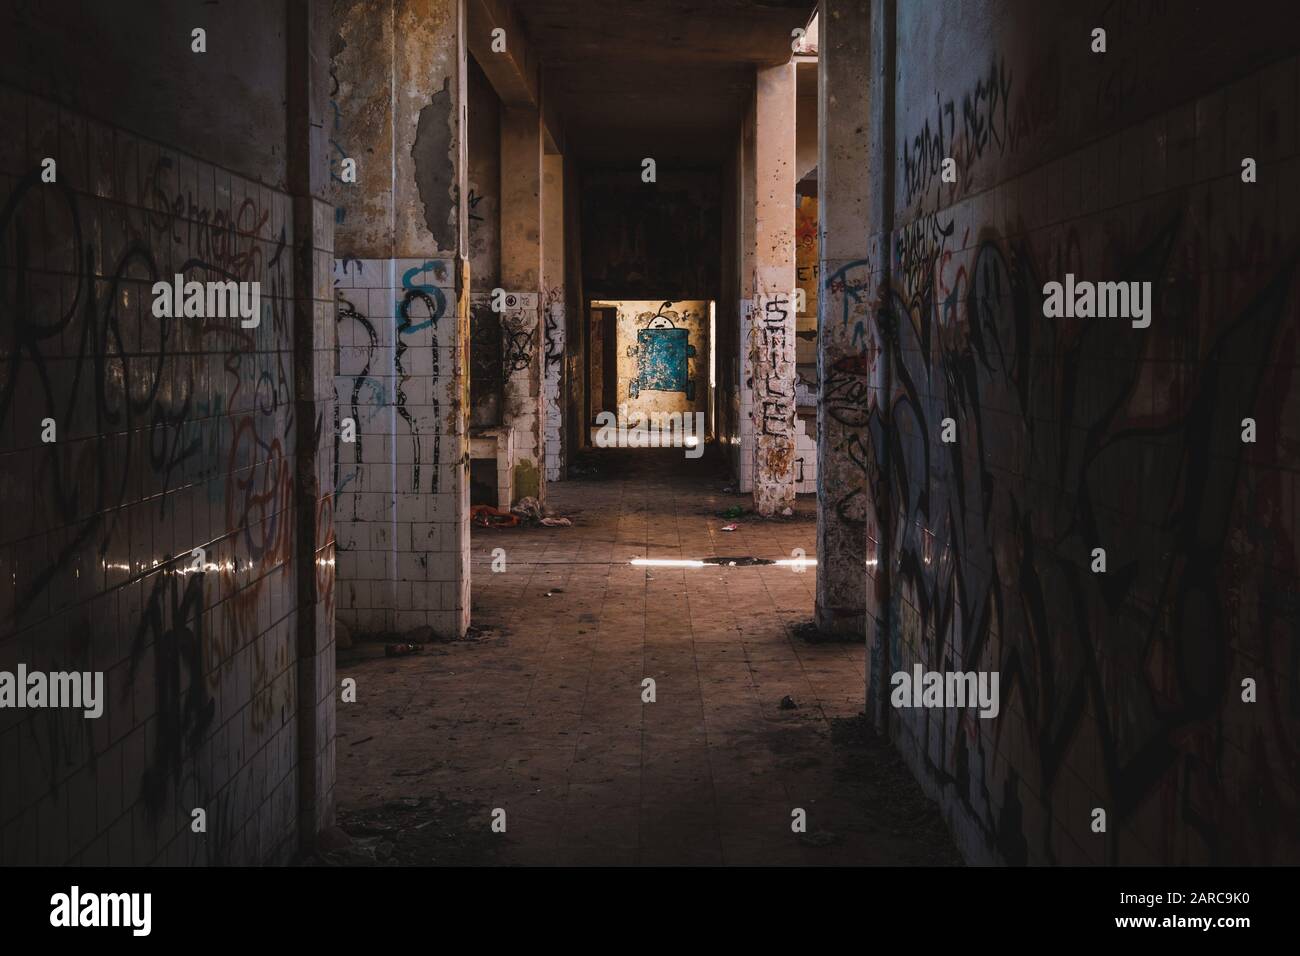 camera vuota all'interno di edifici abbandonati rovina - Foto Stock